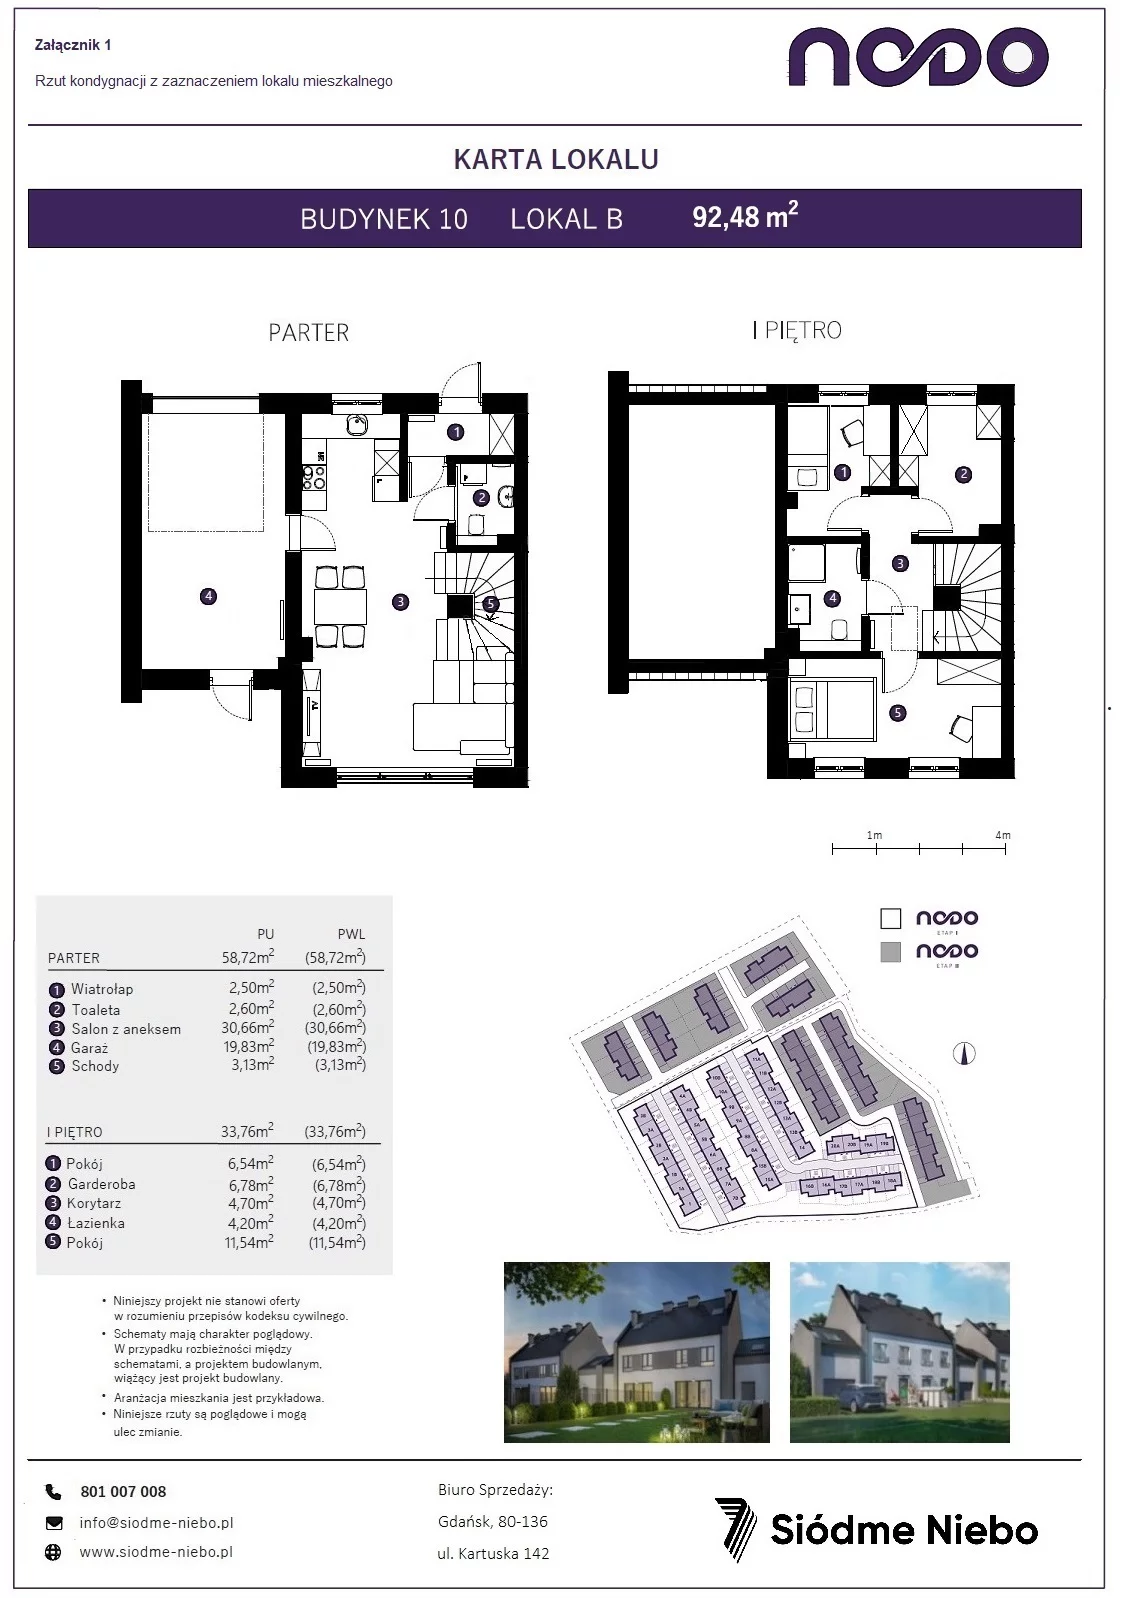 Mieszkanie 92,48 m², parter, oferta nr 10B, Osiedle Nodo, Gdańsk, Jasień, ul. Lubowidzka